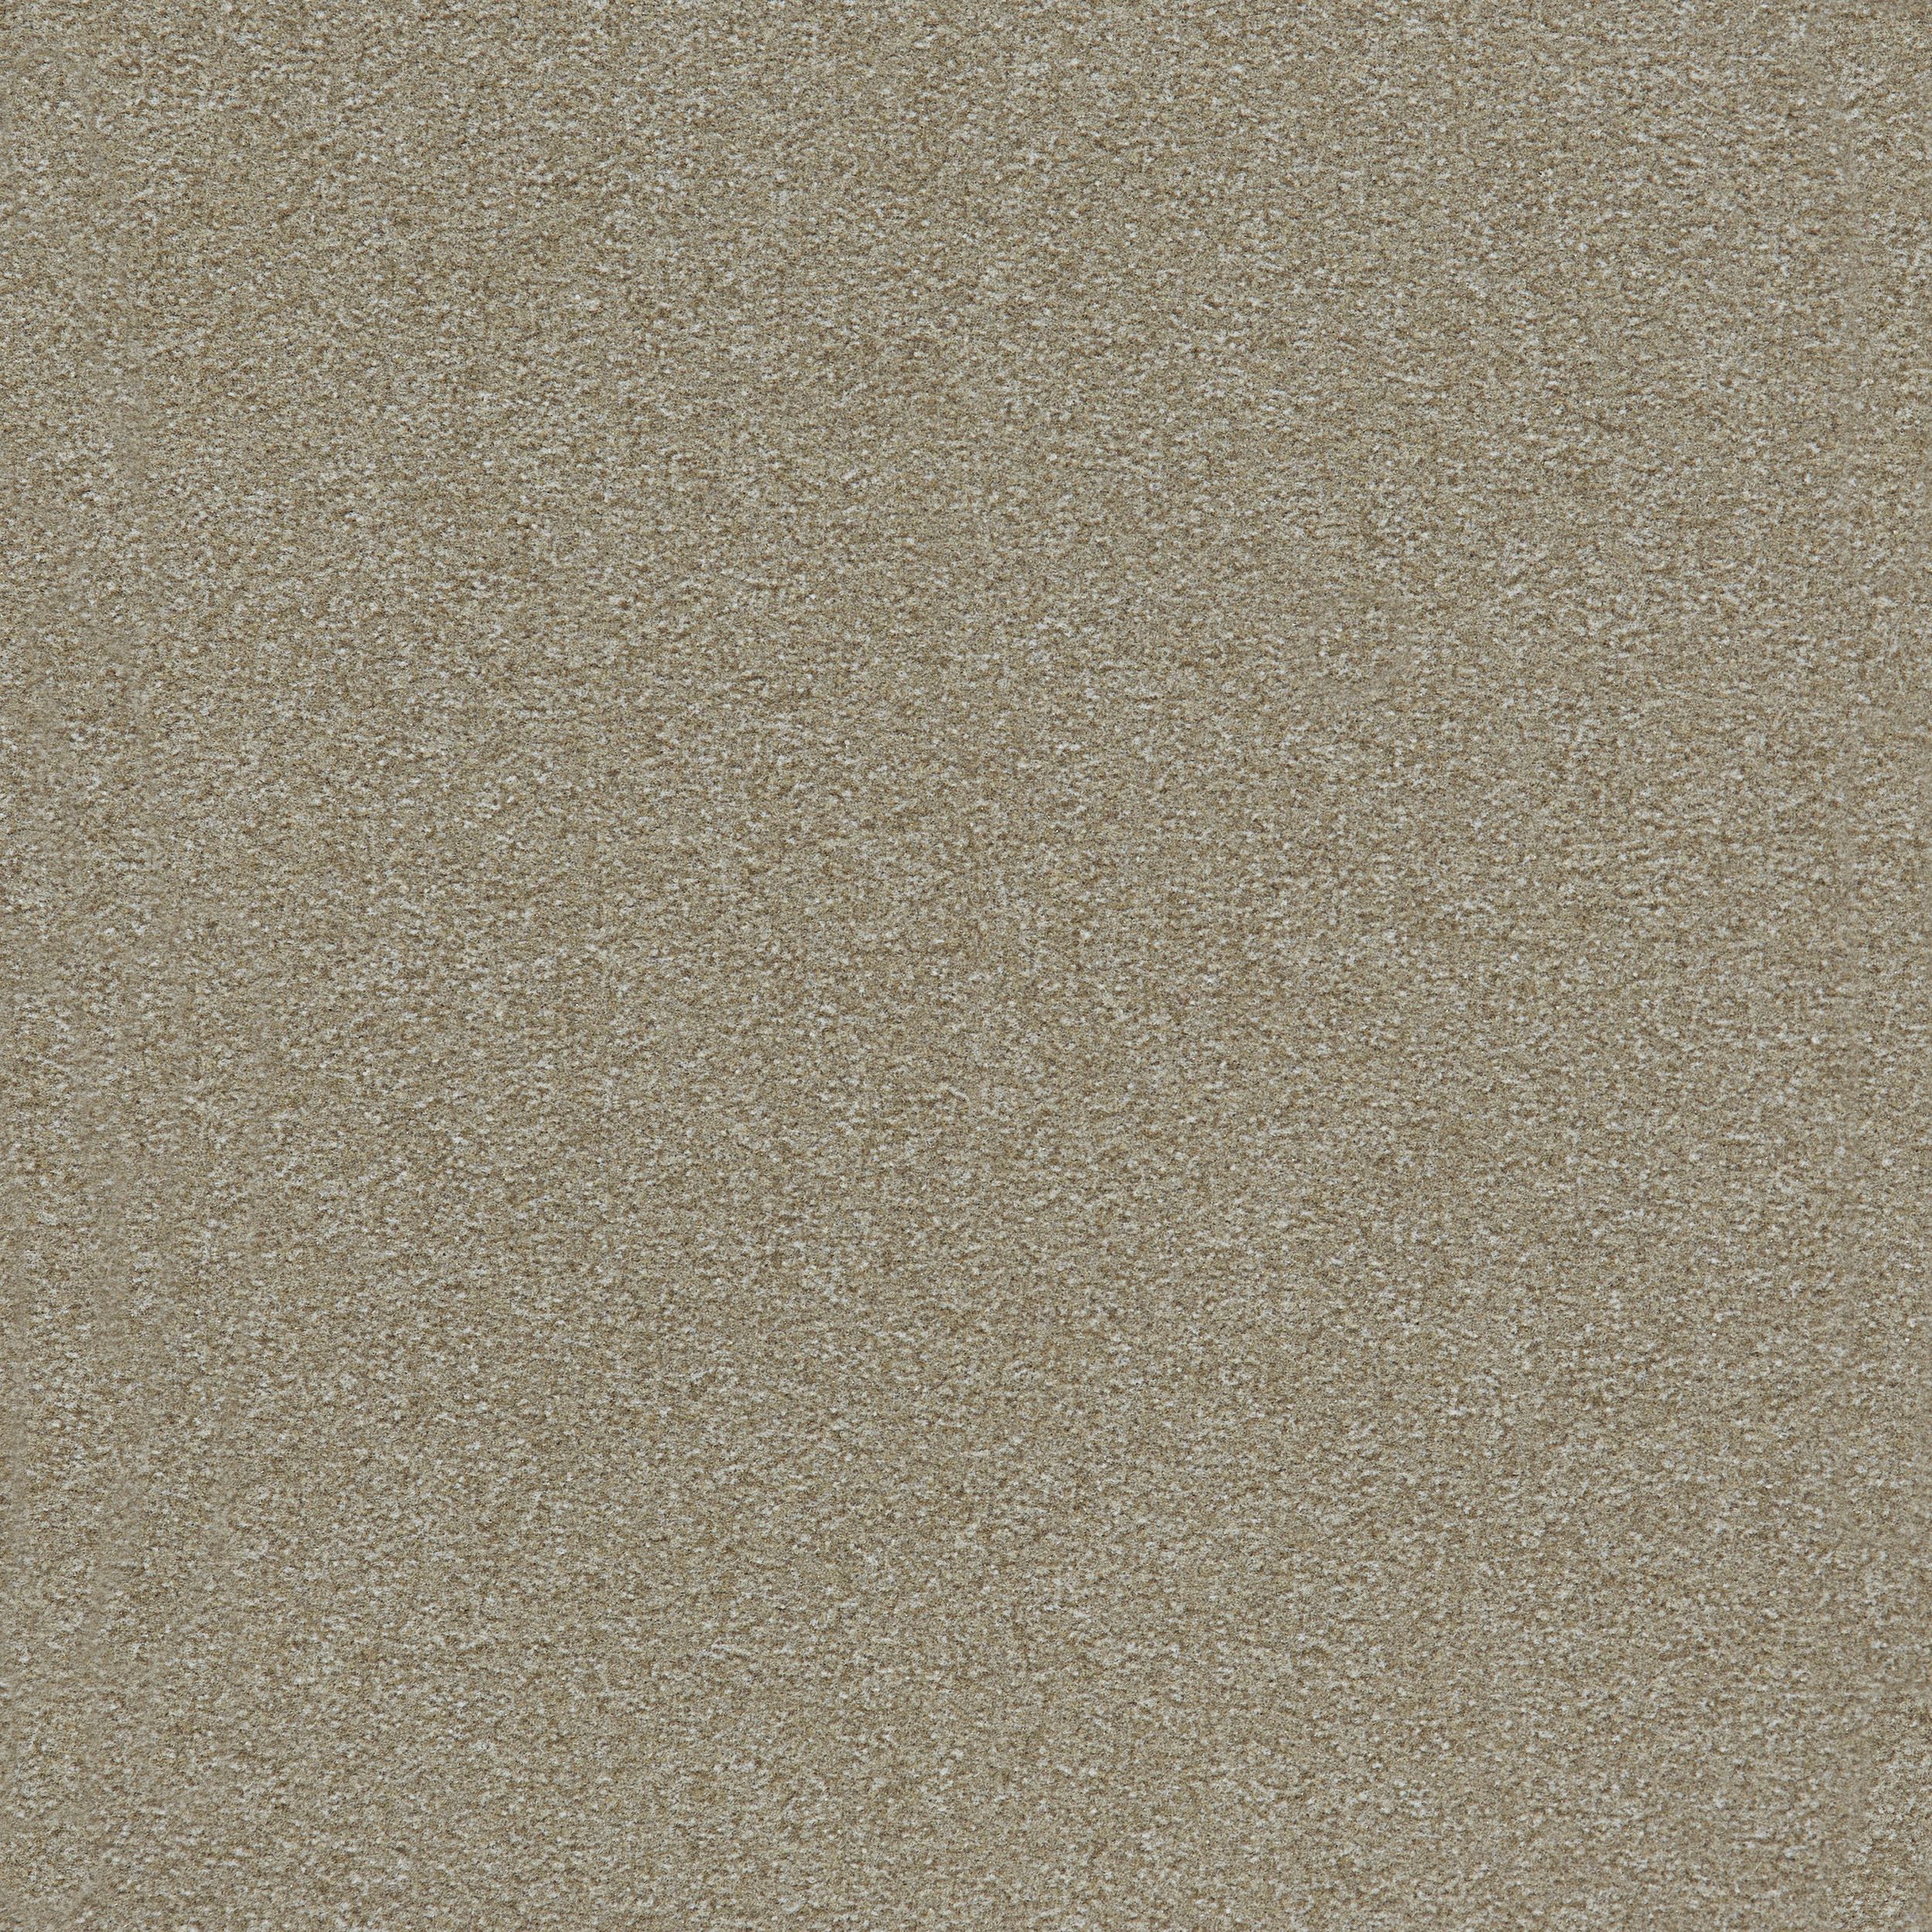 Heuga 725 Carpet Tile In Oyster Bildnummer 9